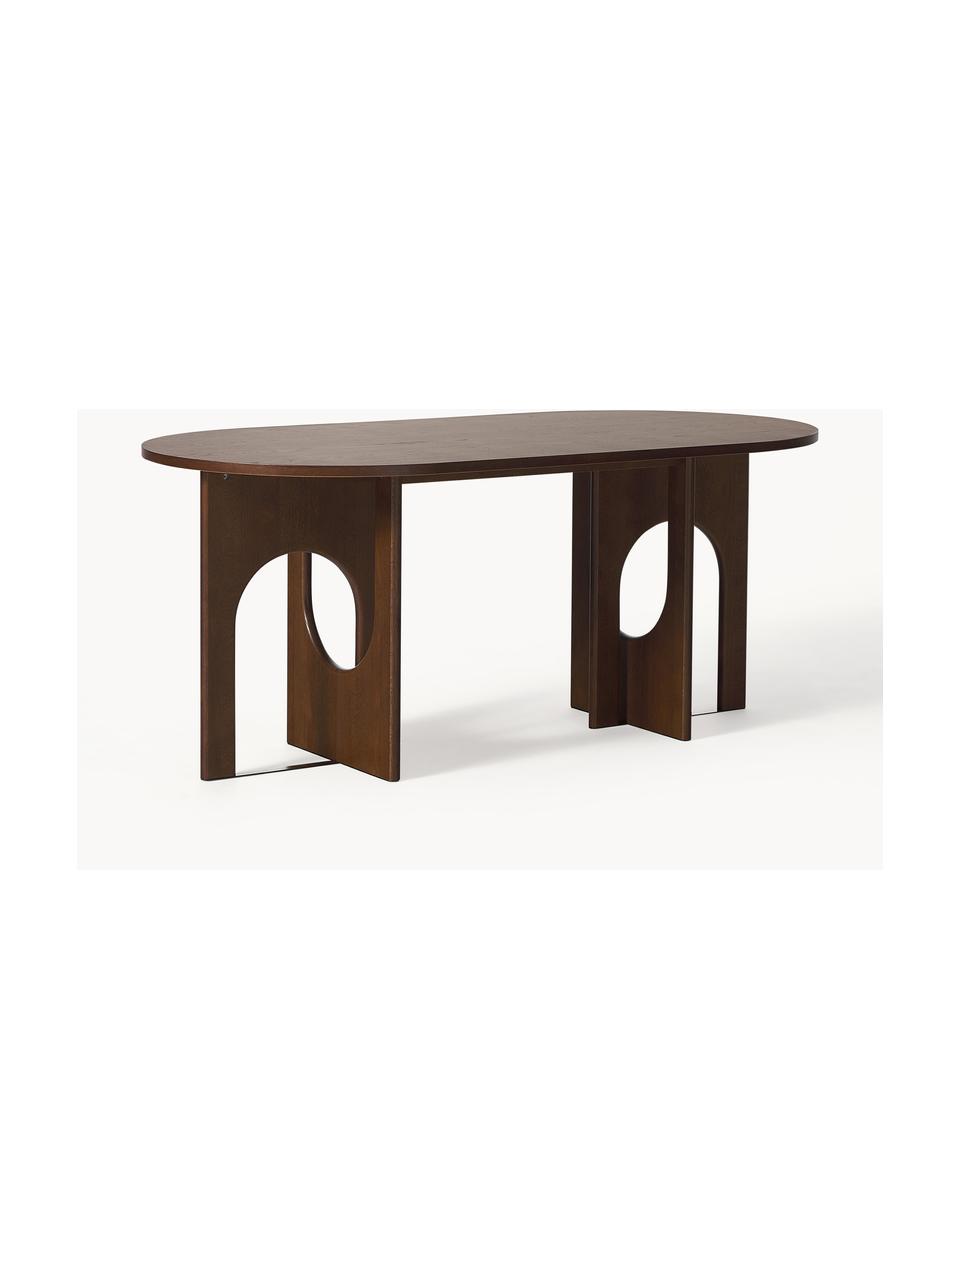 Owalny stół do jadalni Apollo, różne rozmiary, Blat: fornir z drewna dębowego , Nogi: drewno dębowe lakierowane, Drewno dębowe lakierowane na ciemnobrązowo, S 180 x G 90 cm